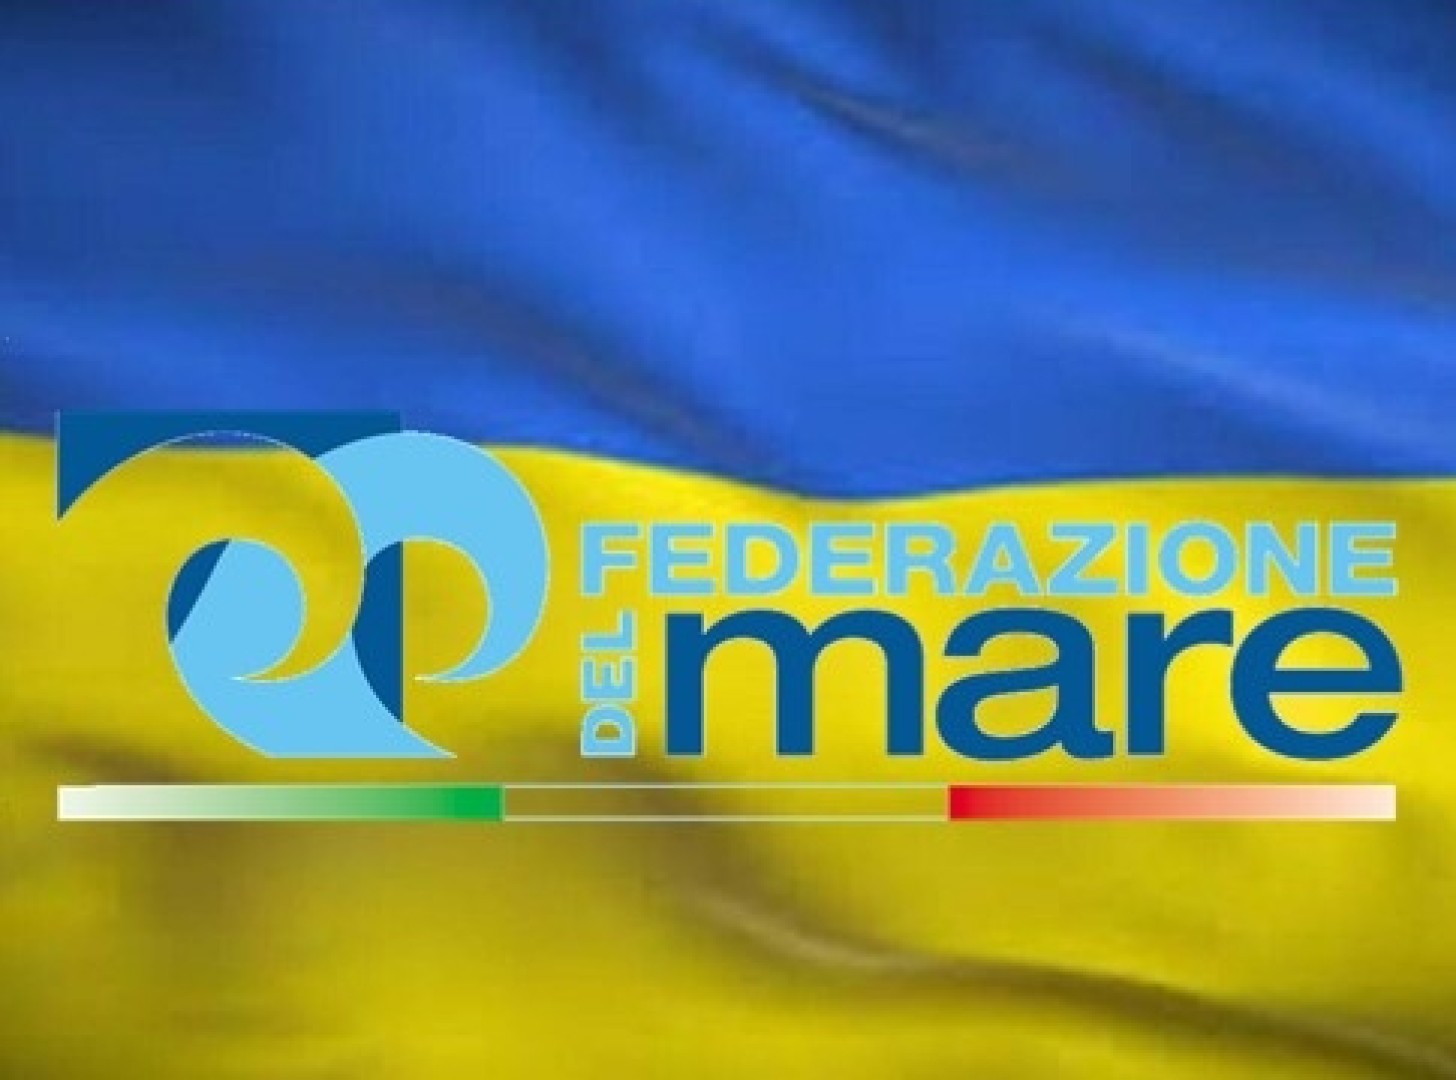 La Federazione del Mare avvia una raccolta fondi per Ucraina